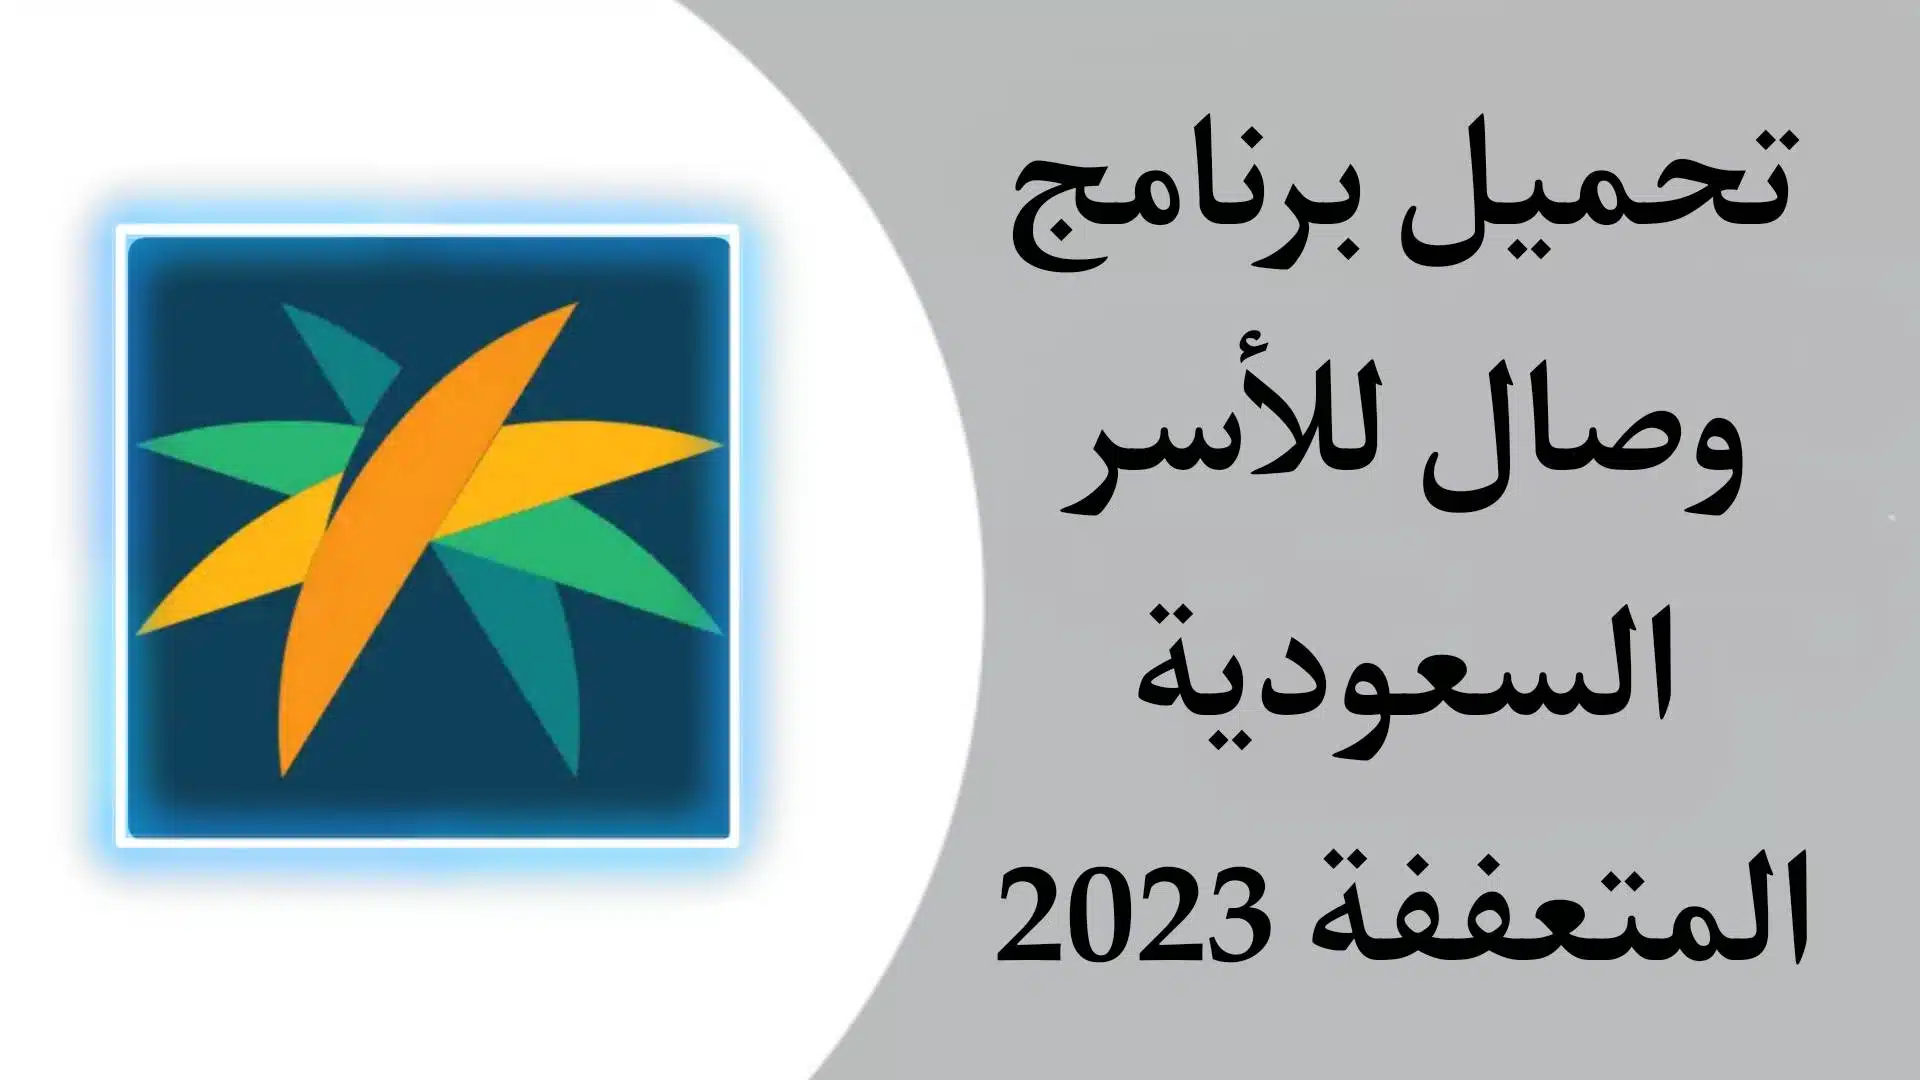 تنزيل تطبيق وصال للأسر المتعففة في السعودية 2023 اخر اصدار للاندرويد والايفون